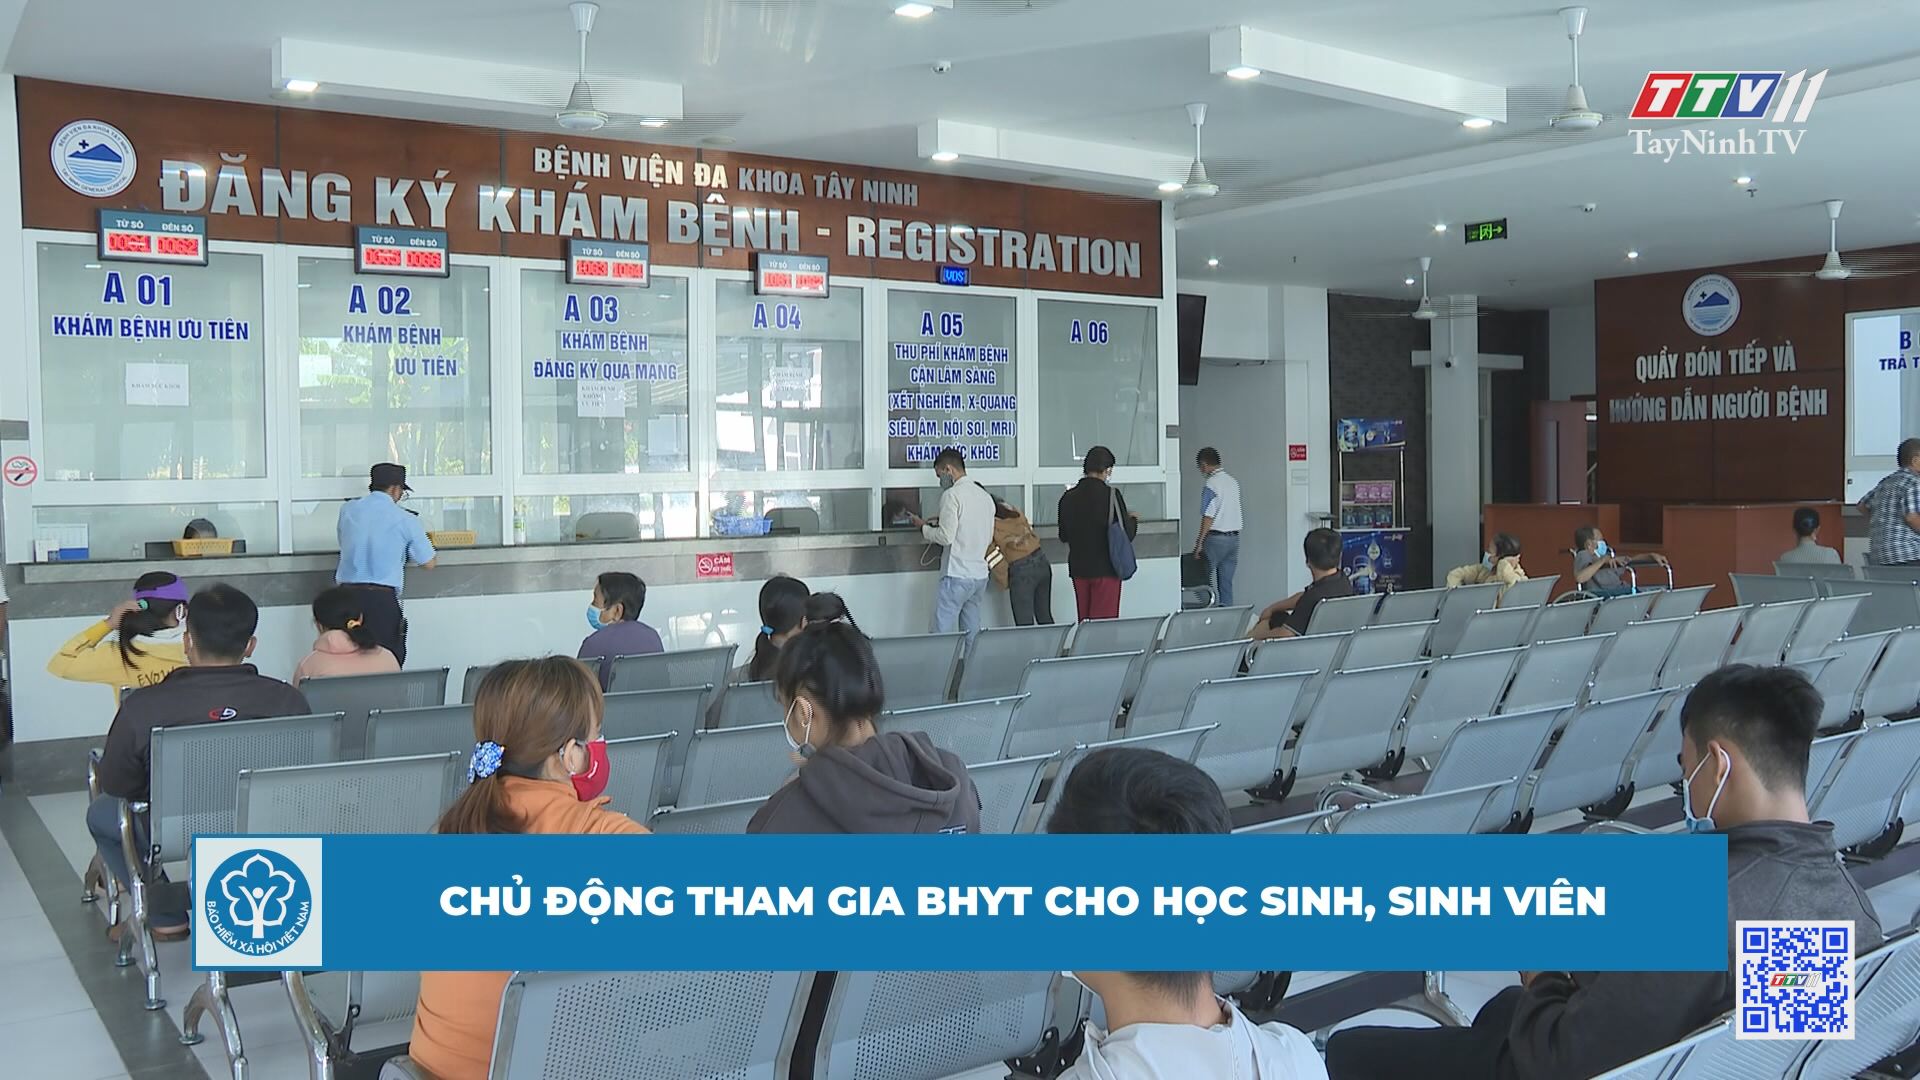 Chủ động tham gia BHYT cho học sinh, sinh viên | BẢO HIỂM XÃ HỘI | TayNinhTV